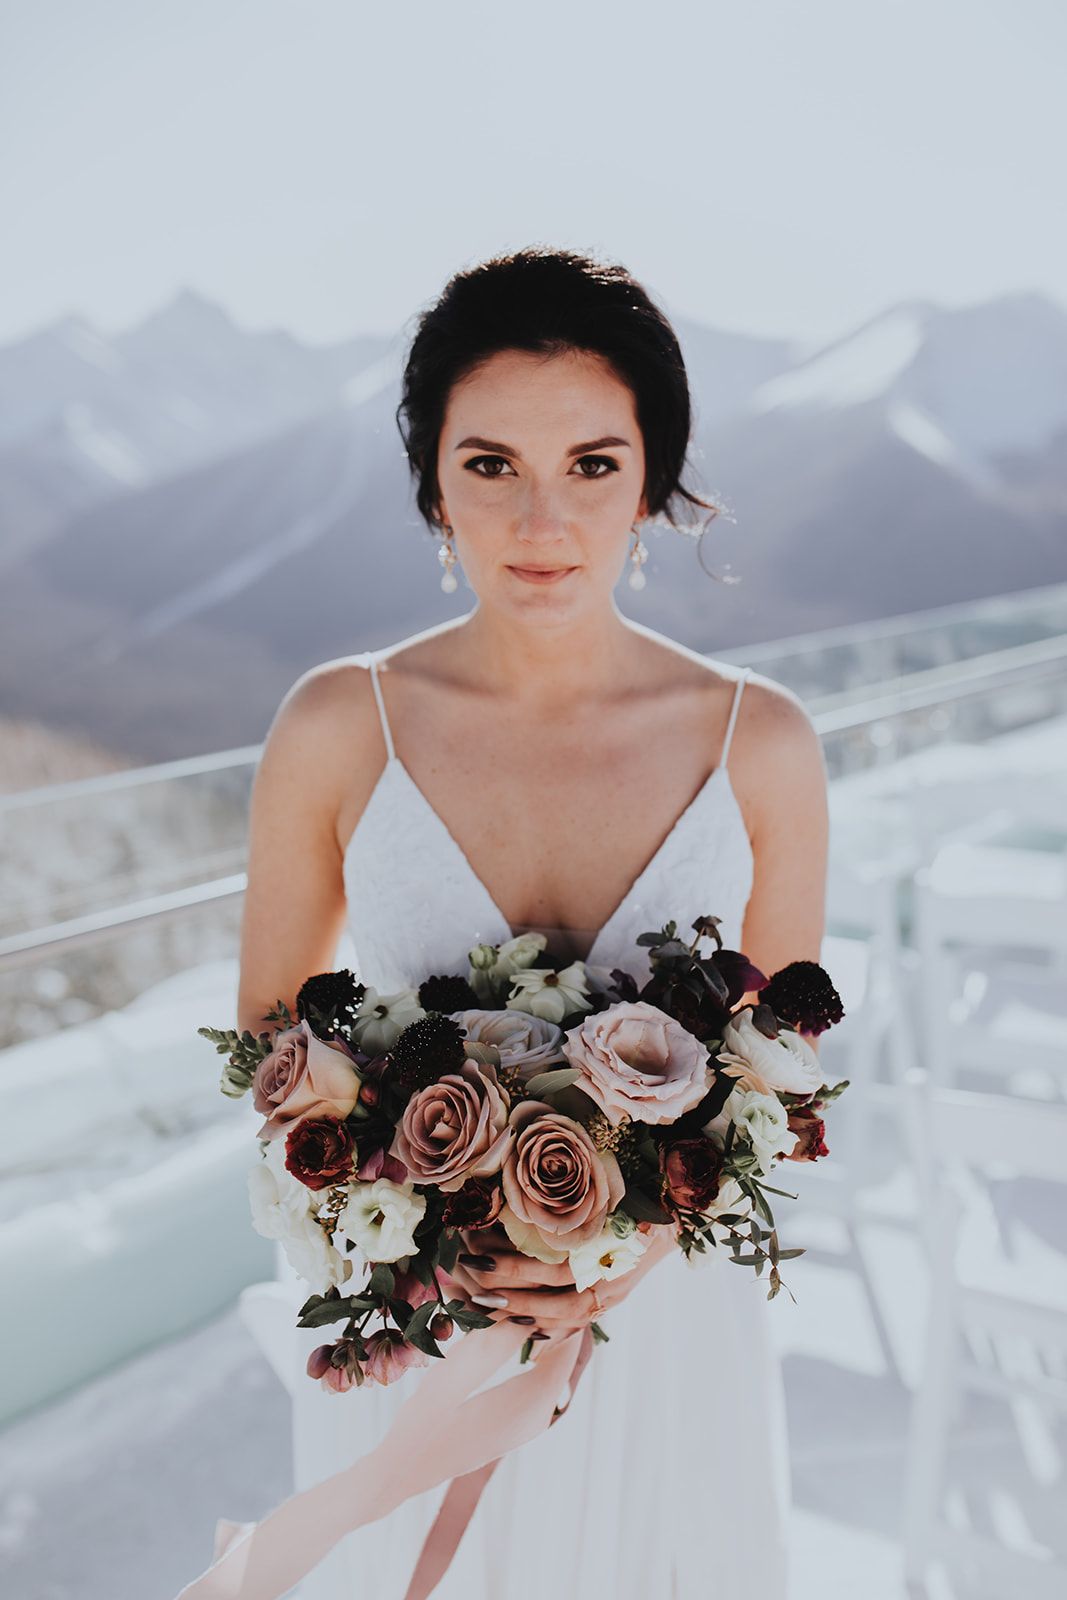 Sky Bistro Banff Wedding - Featured on Bronte Bride, wedding florals, flowers by janie, bridal bouquet winter